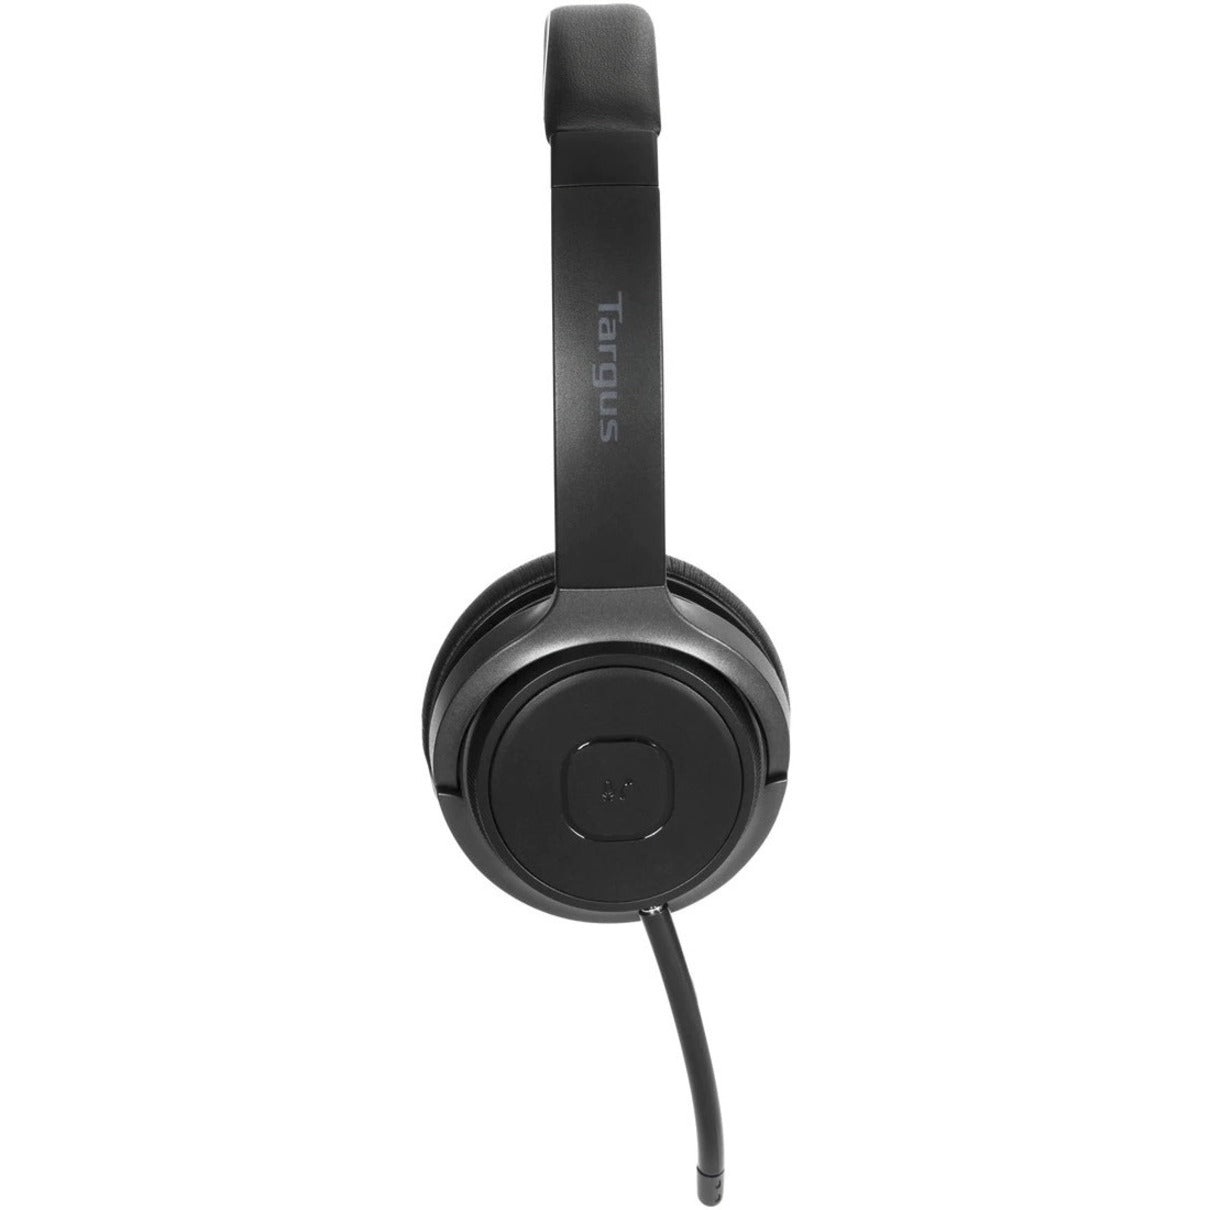 Cuffie stereo wireless Bluetooth Targus AEH104TT cuffie on-ear leggere e confortevoli con microfono girevole